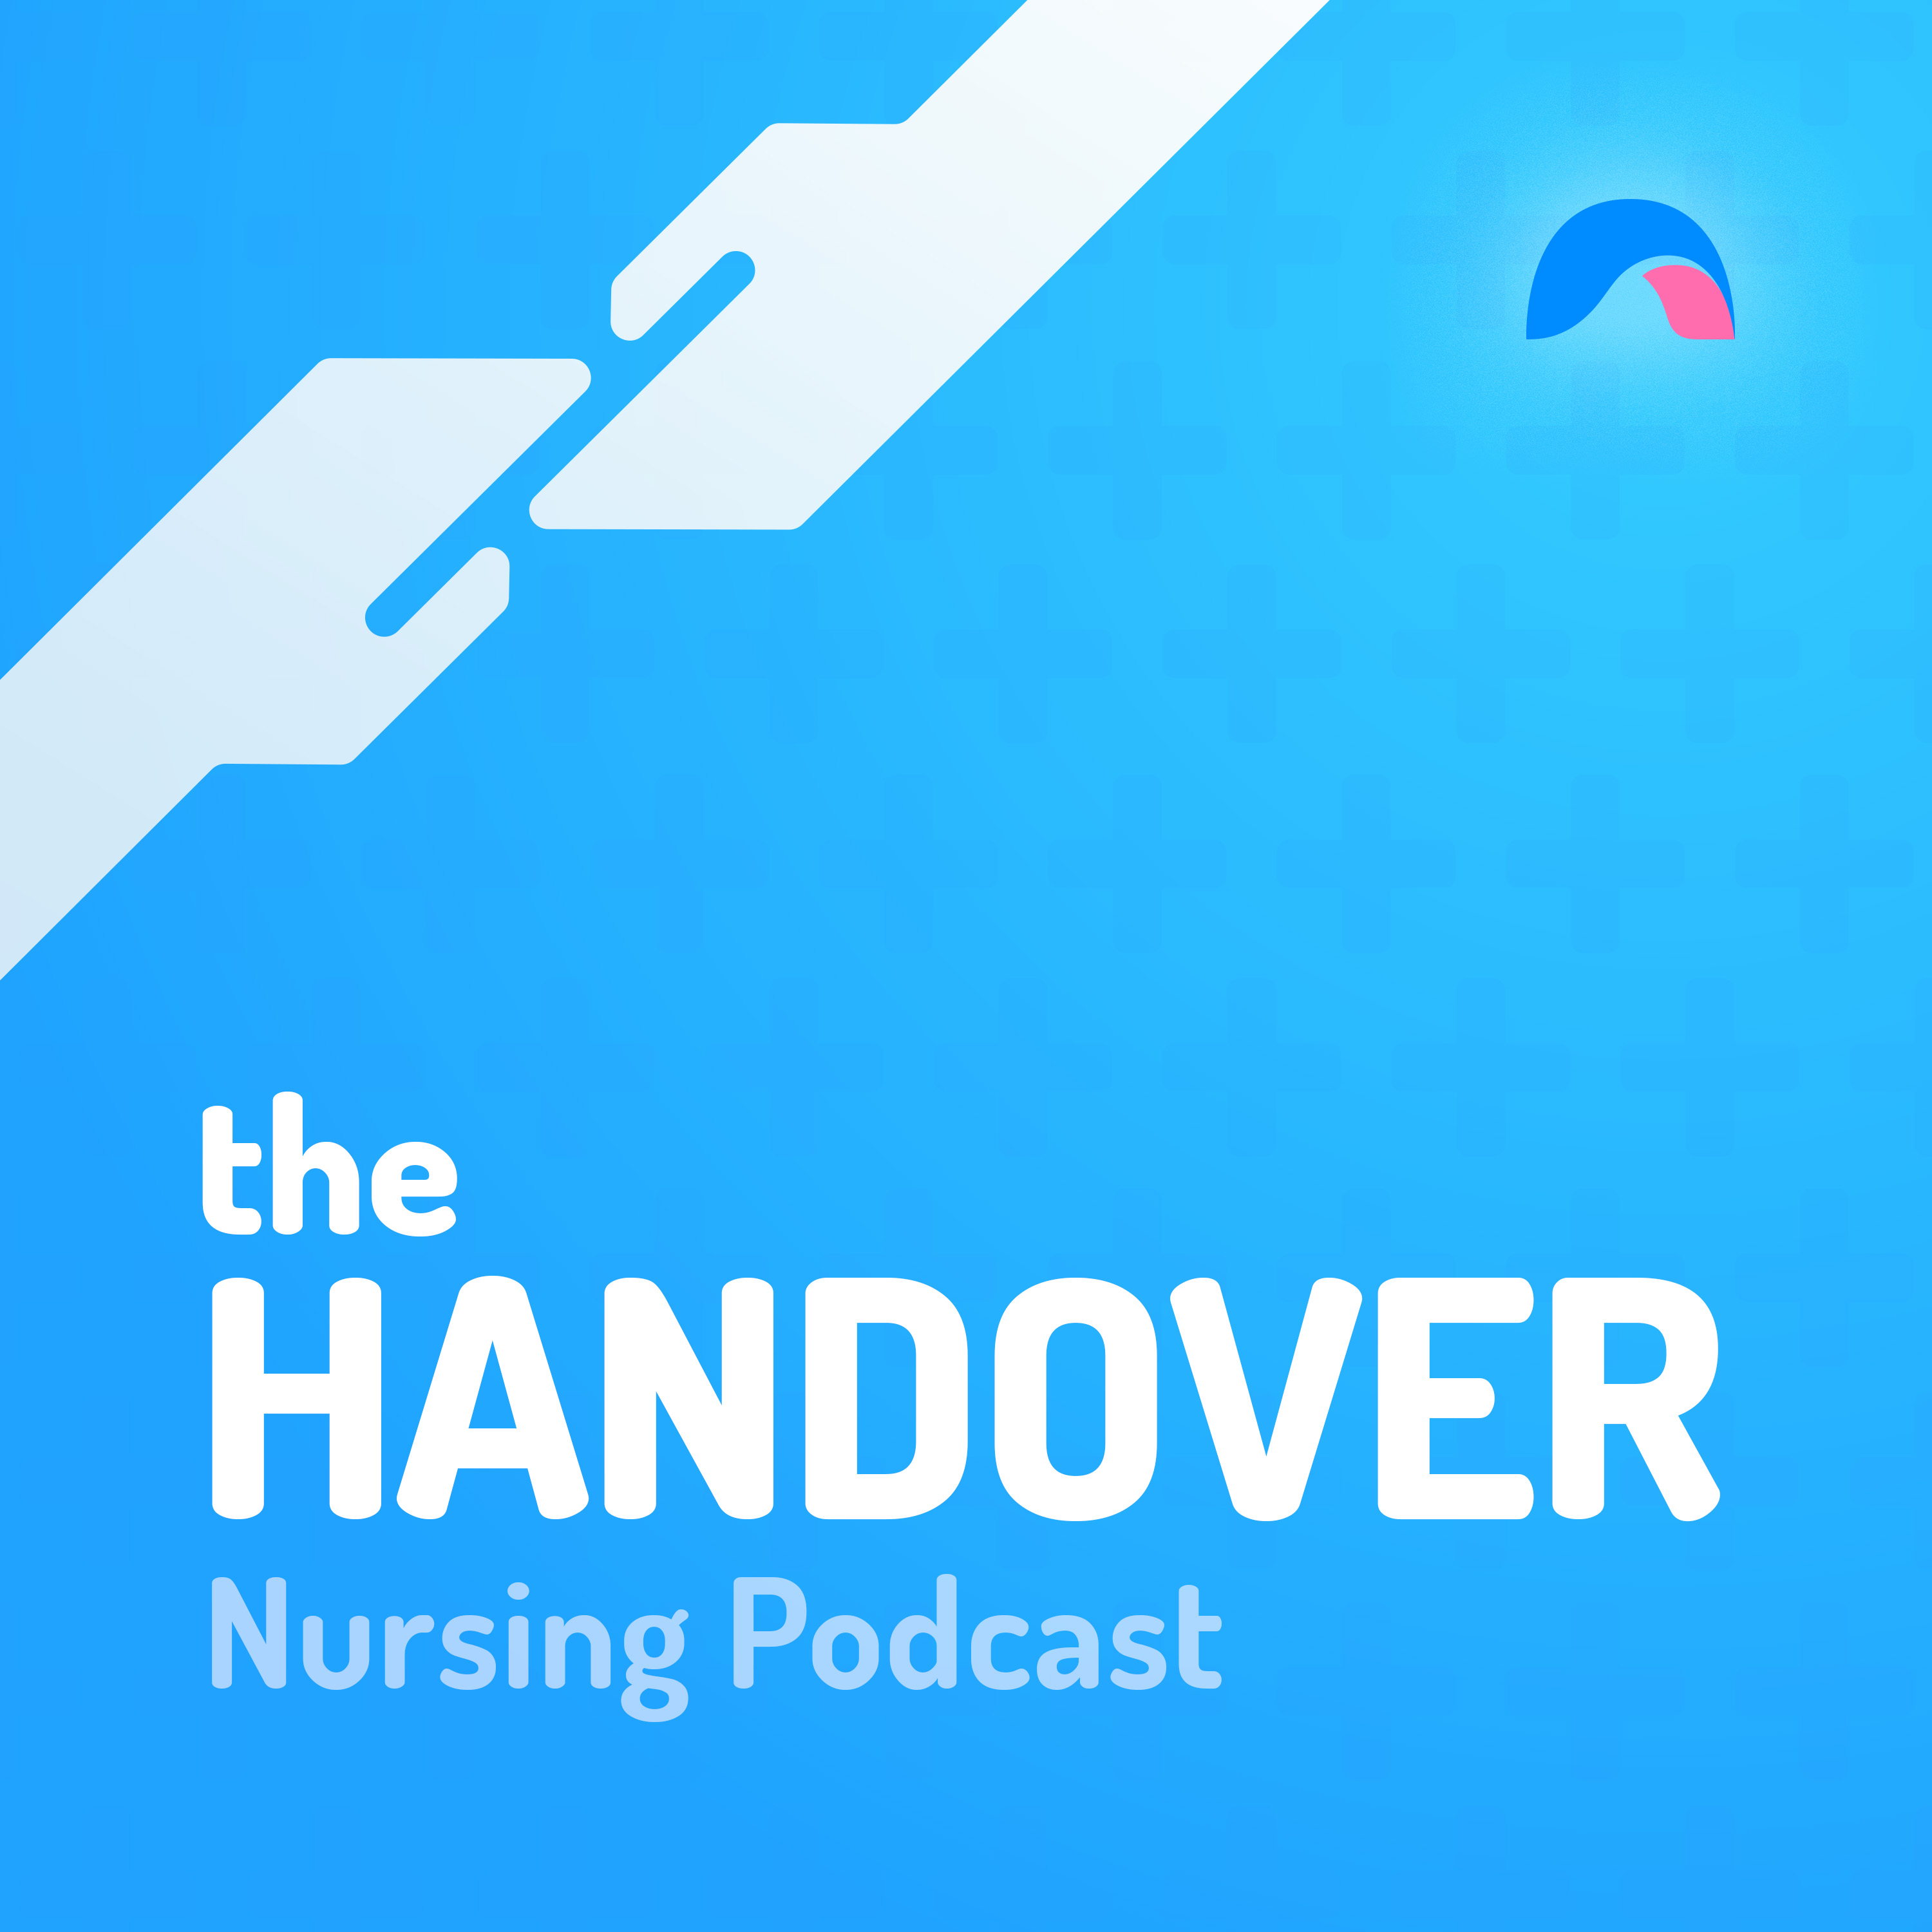 The Handover Nursing Podcast